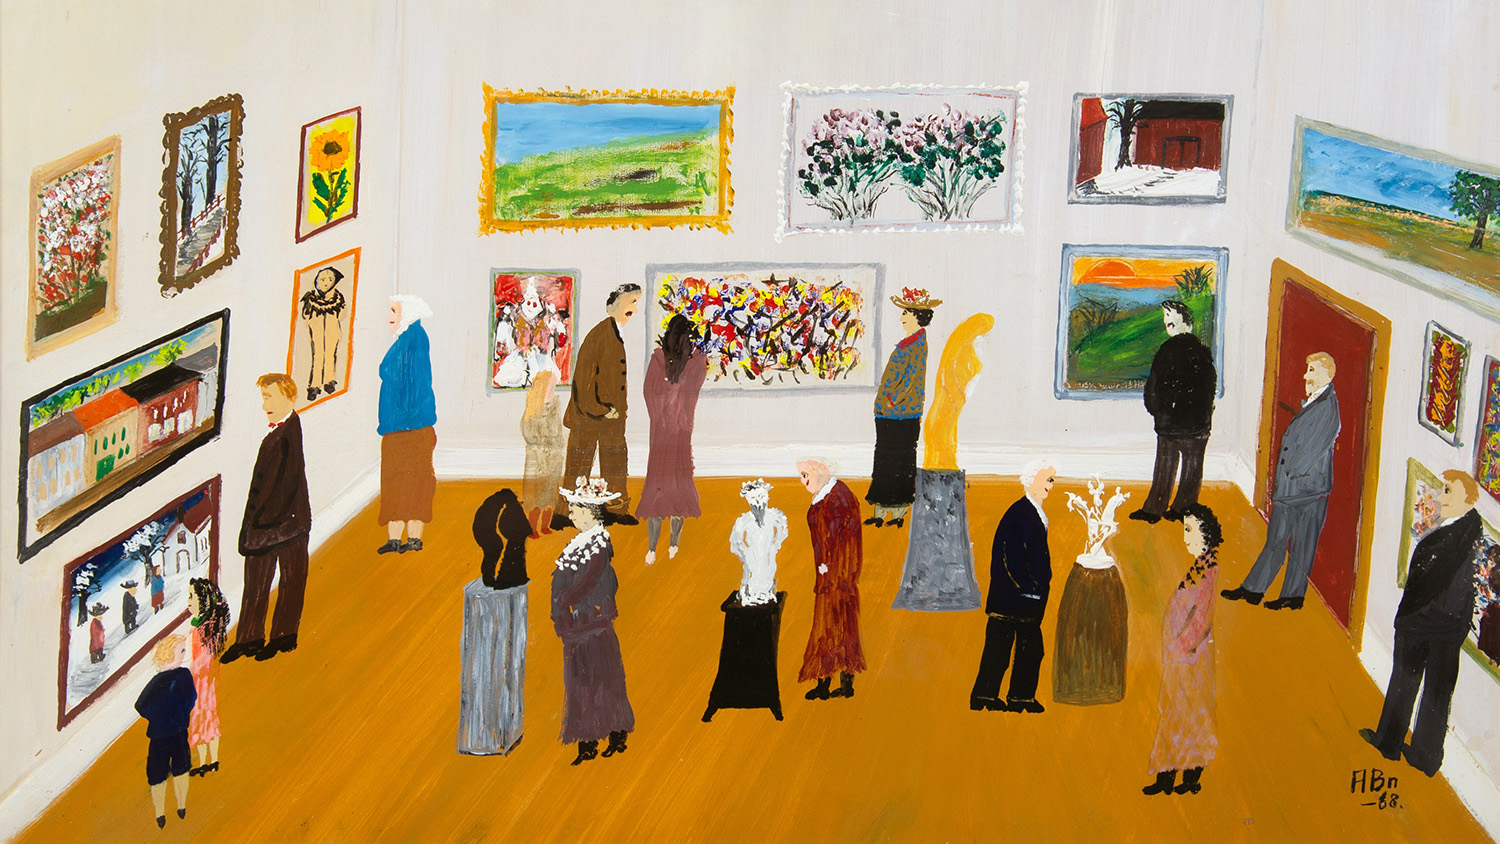 Ett naivt konstverk av Axel Bengtsson visar en utställningssal och många personer som tittar på konstverk